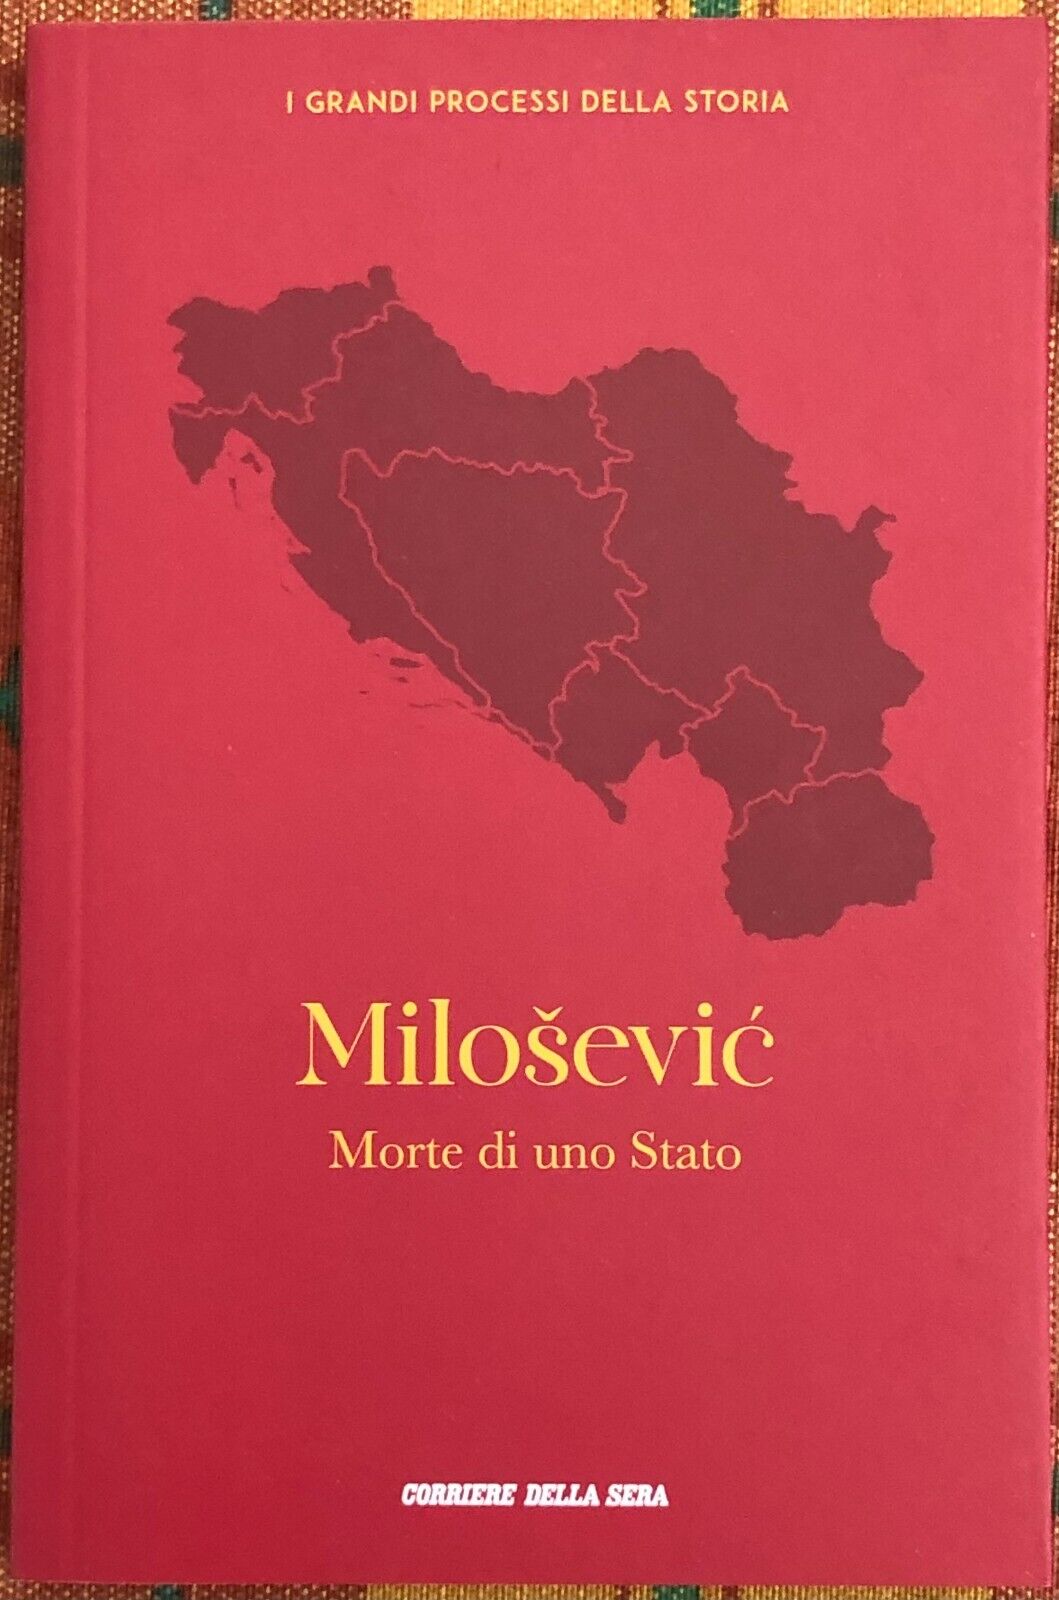  I grandi processi della storia n. 11 - Milosevic. Morte di uno Stato di Barbar